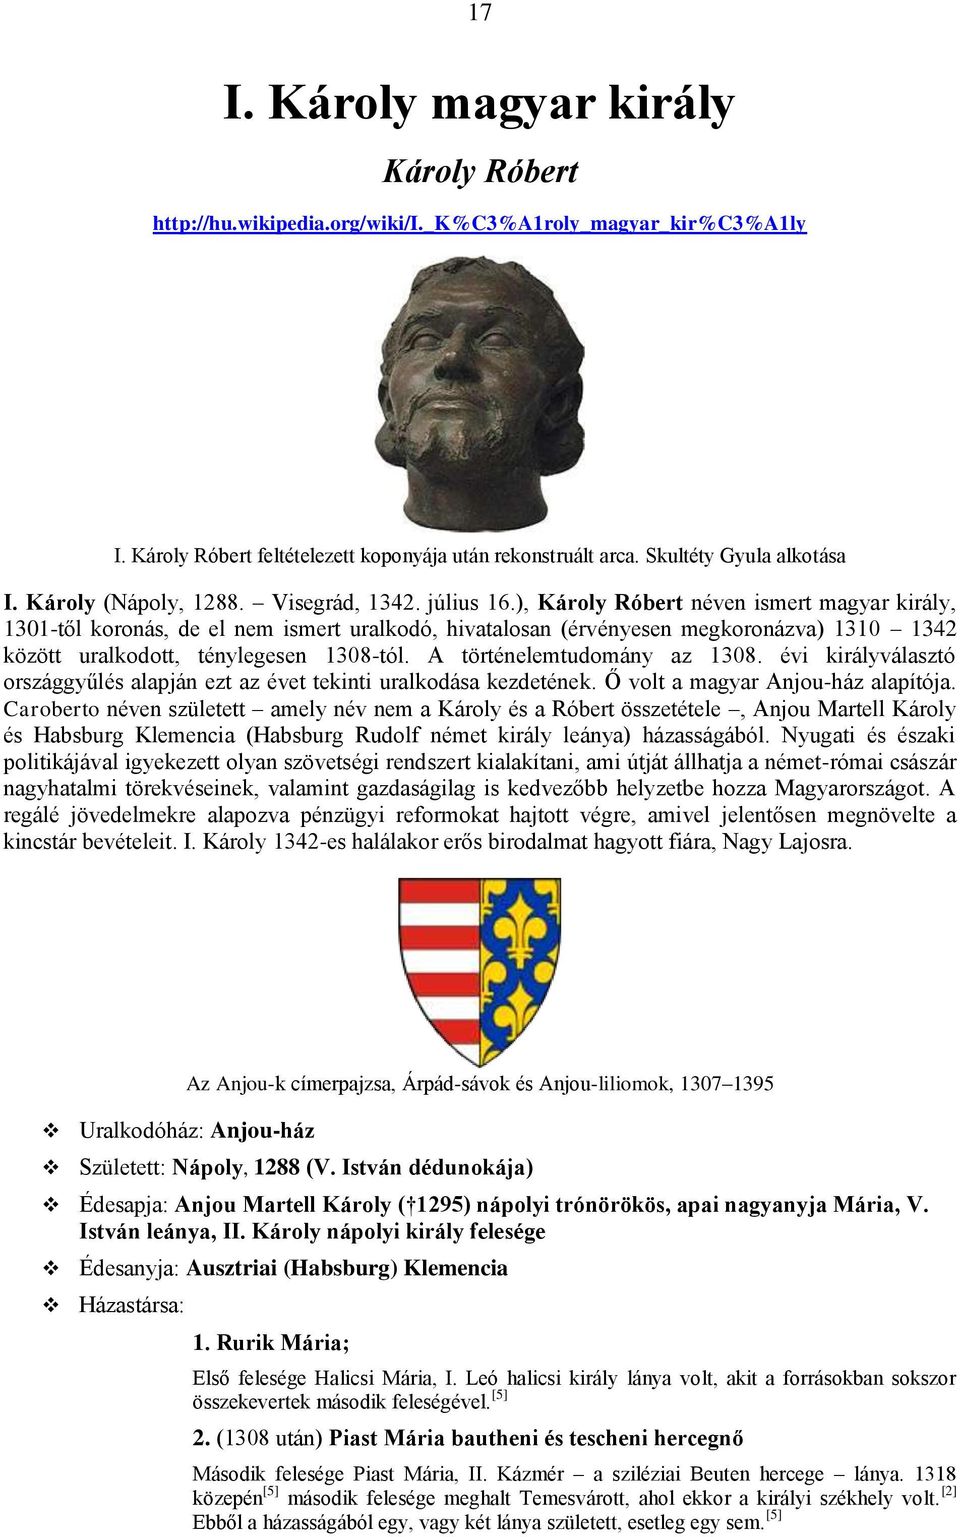 ), Károly Róbert néven ismert magyar király, 1301-től koronás, de el nem ismert uralkodó, hivatalosan (érvényesen megkoronázva) 1310 1342 között uralkodott, ténylegesen 1308-tól.